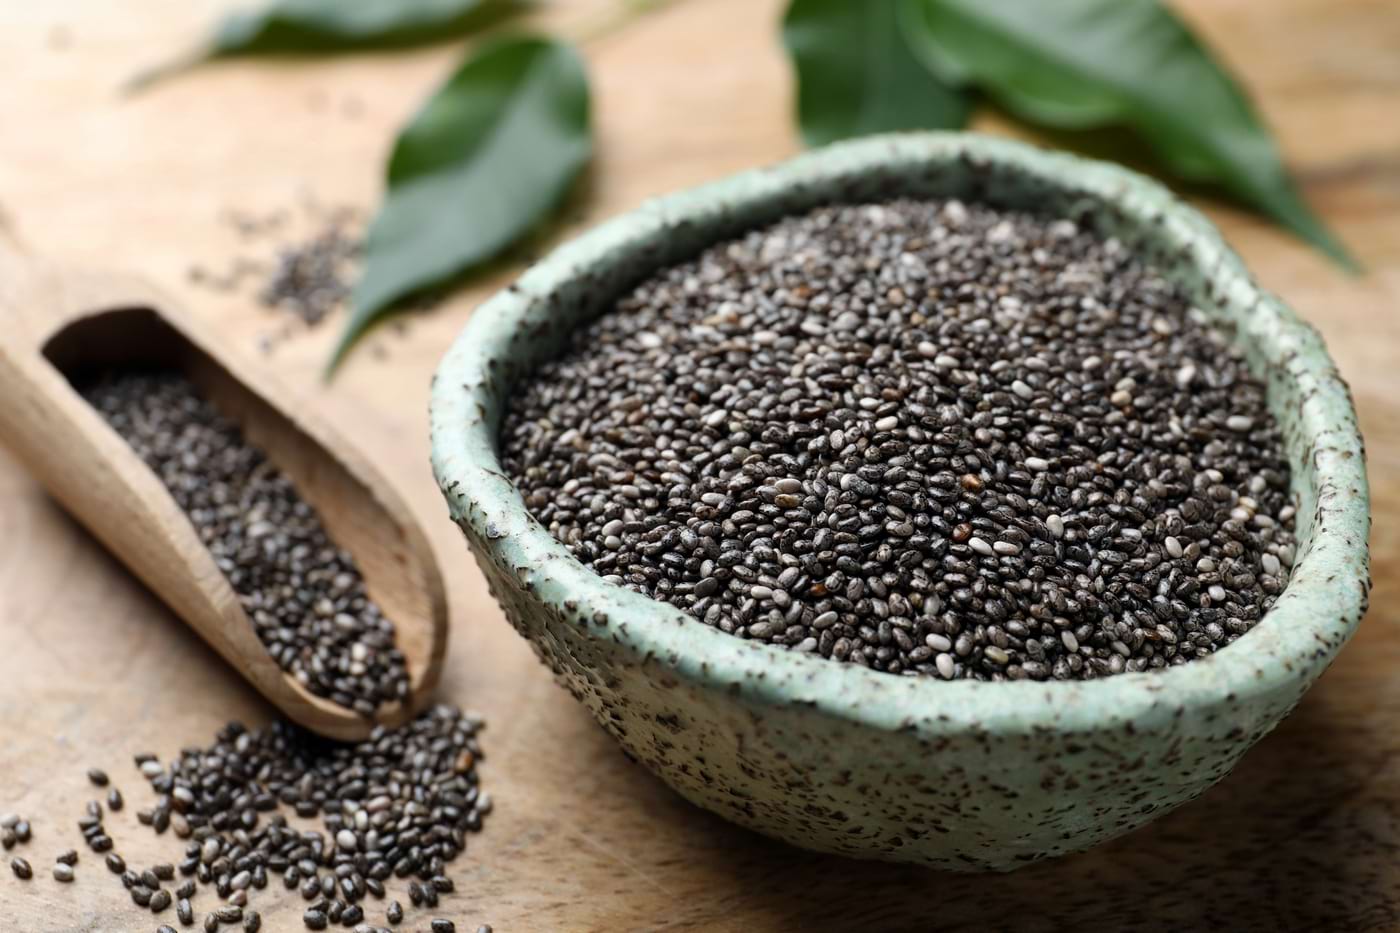 Cum se folosesc semințele de chia pentru pierderea în greutate? - CCC Food Policy